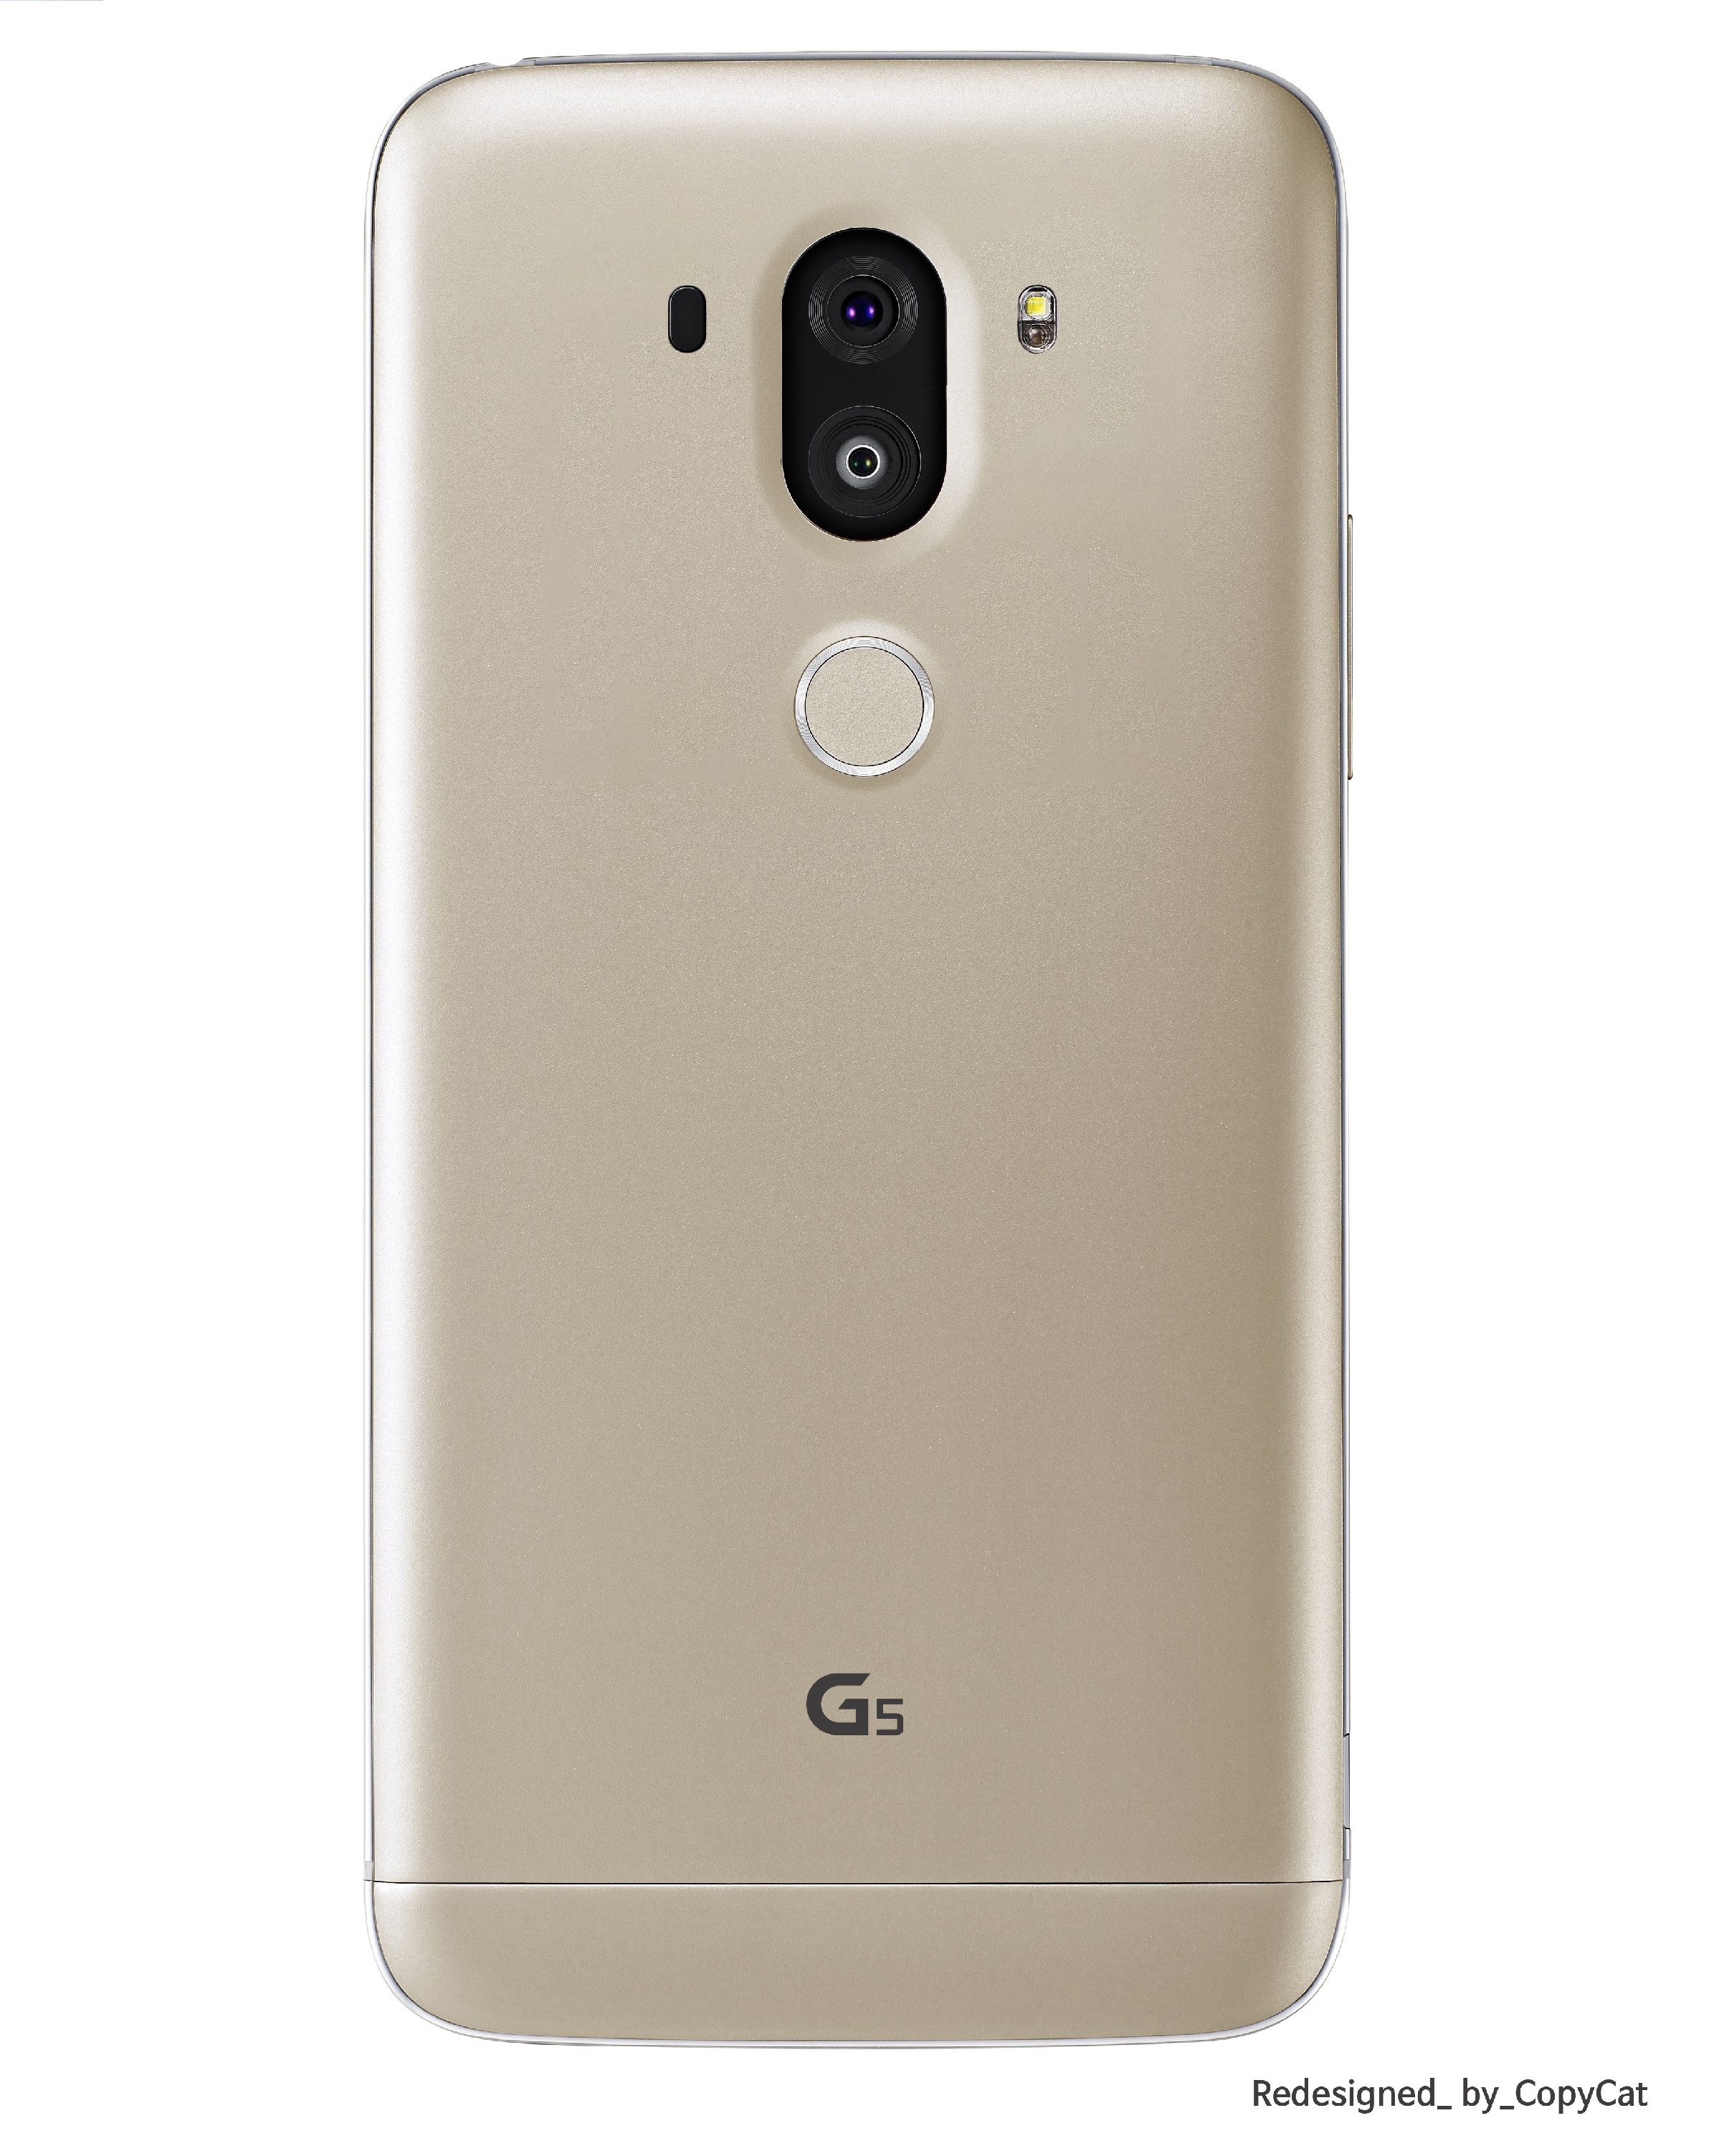 LG G5 Redesigned (3).jpg